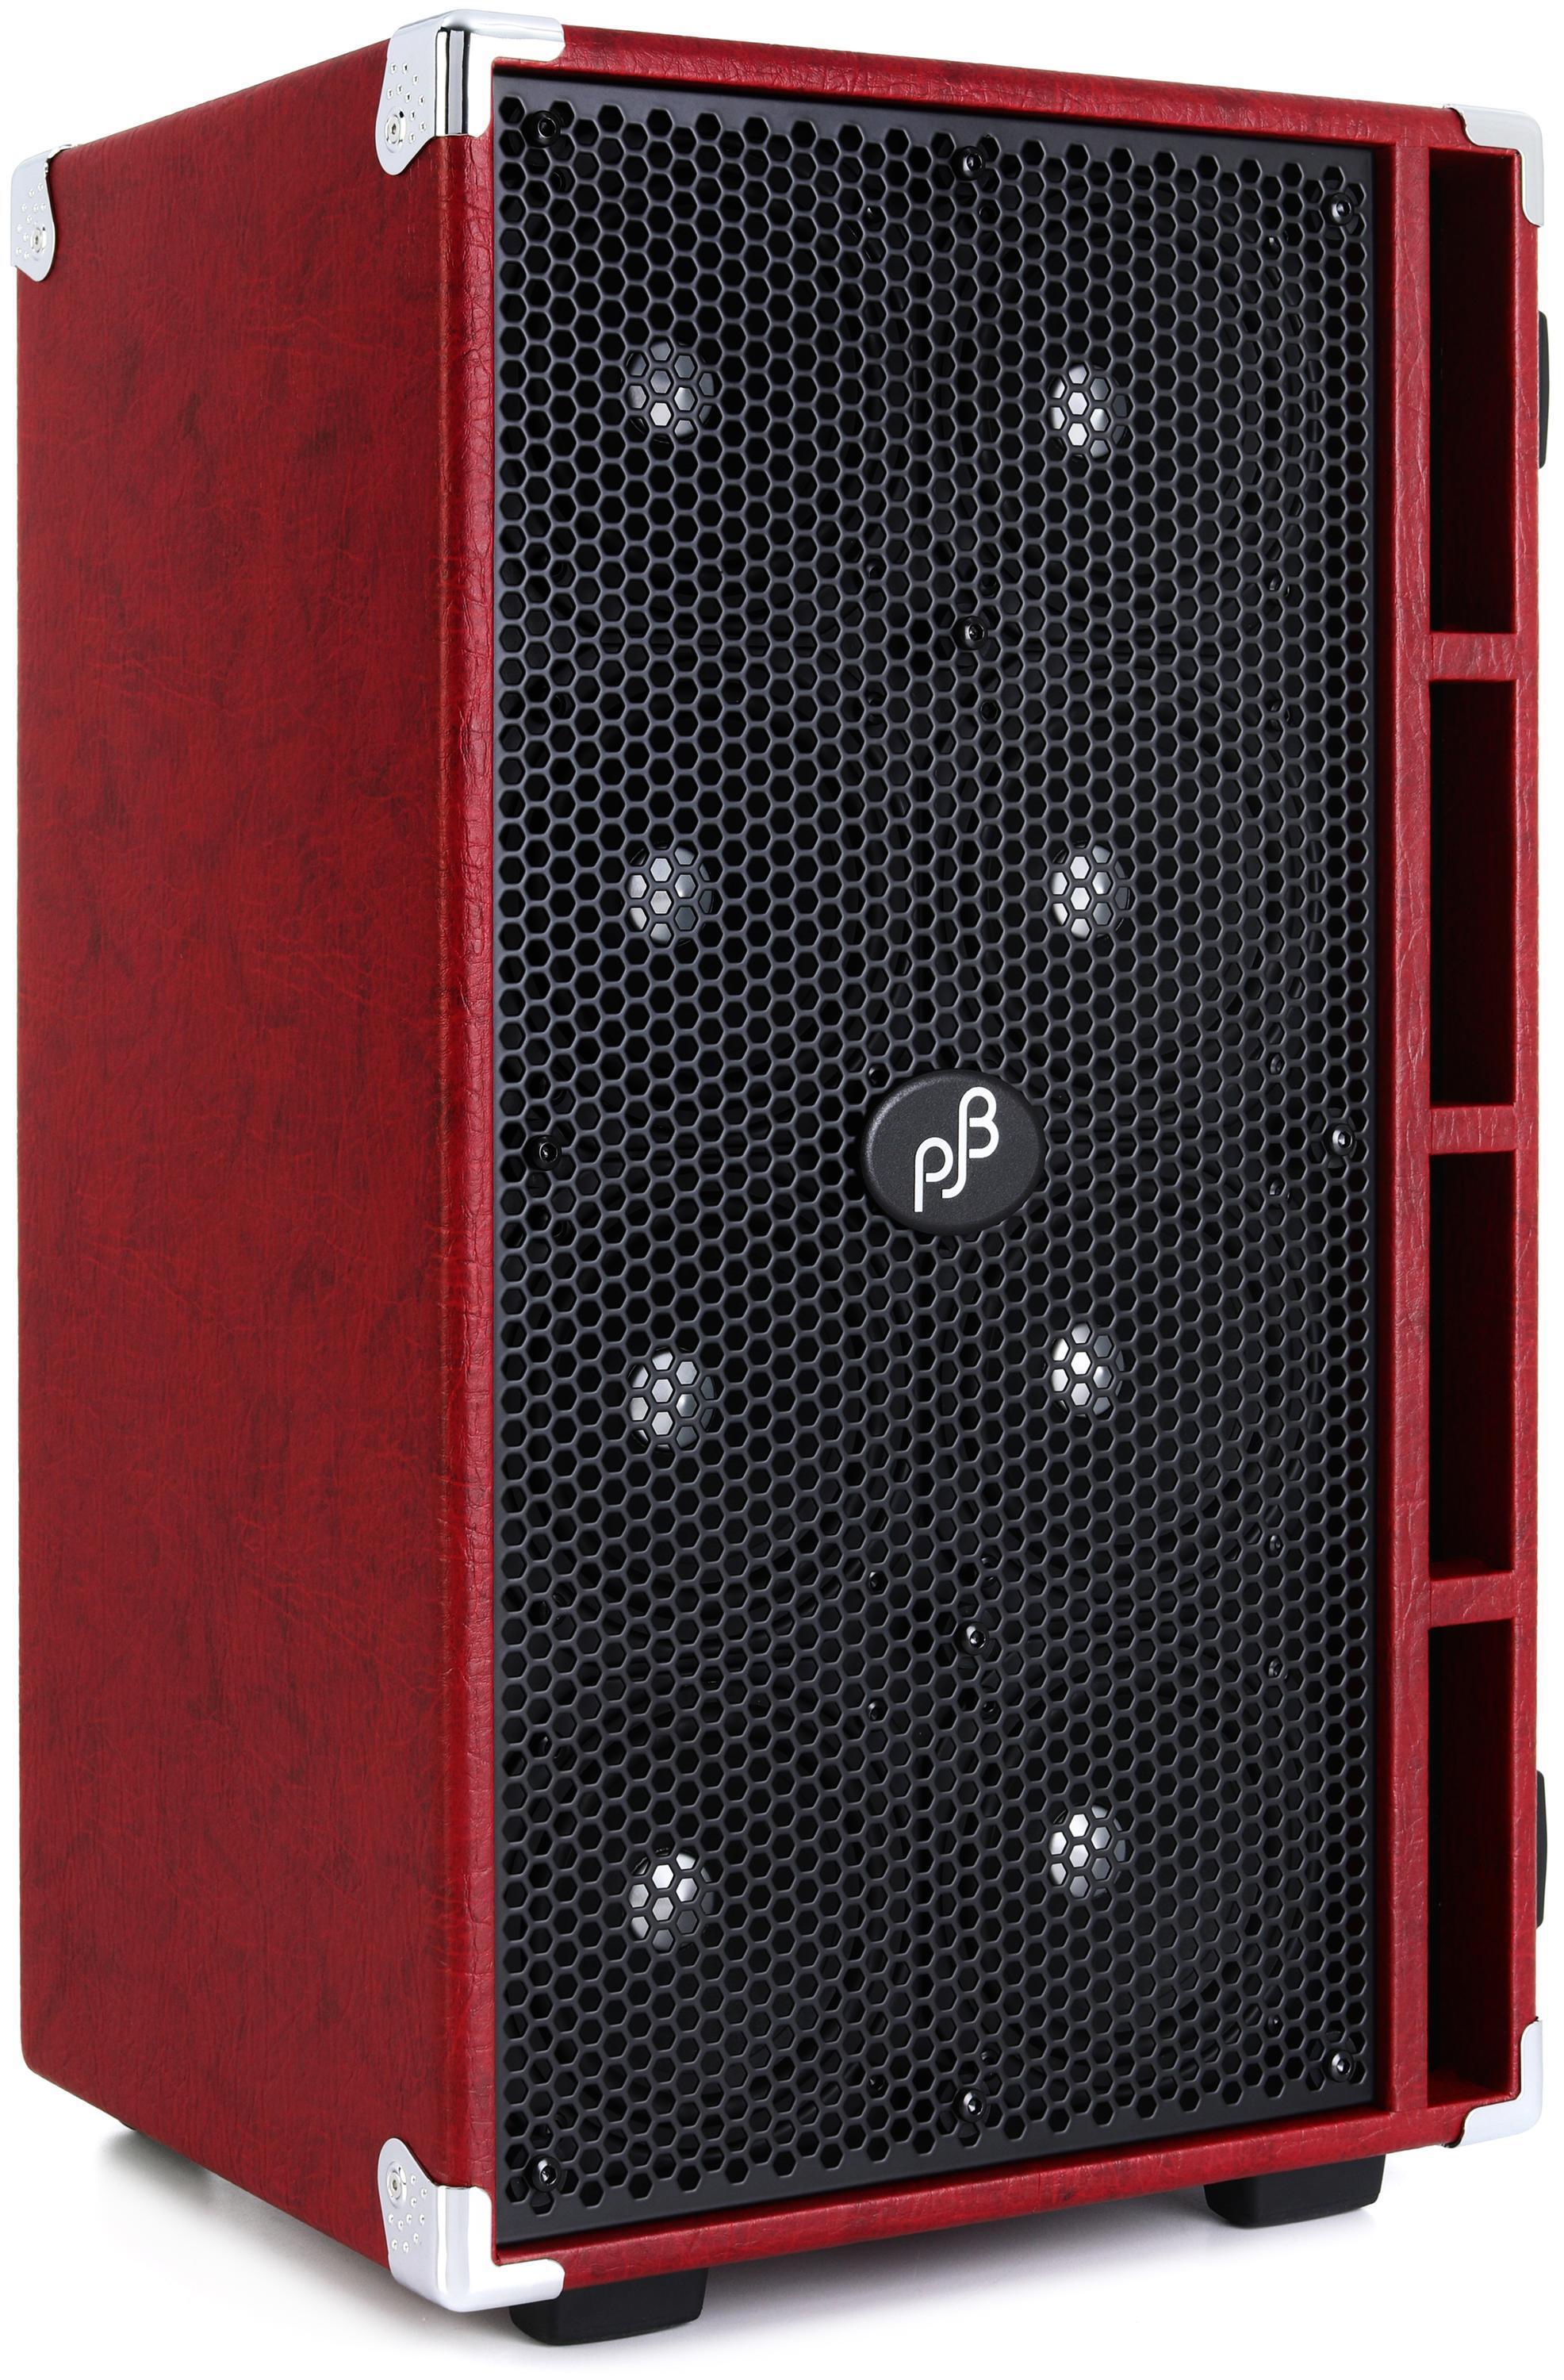 Phil Jones Bass Compact 8 8 x 5-inch 800-watt Bass Cabinet - Red